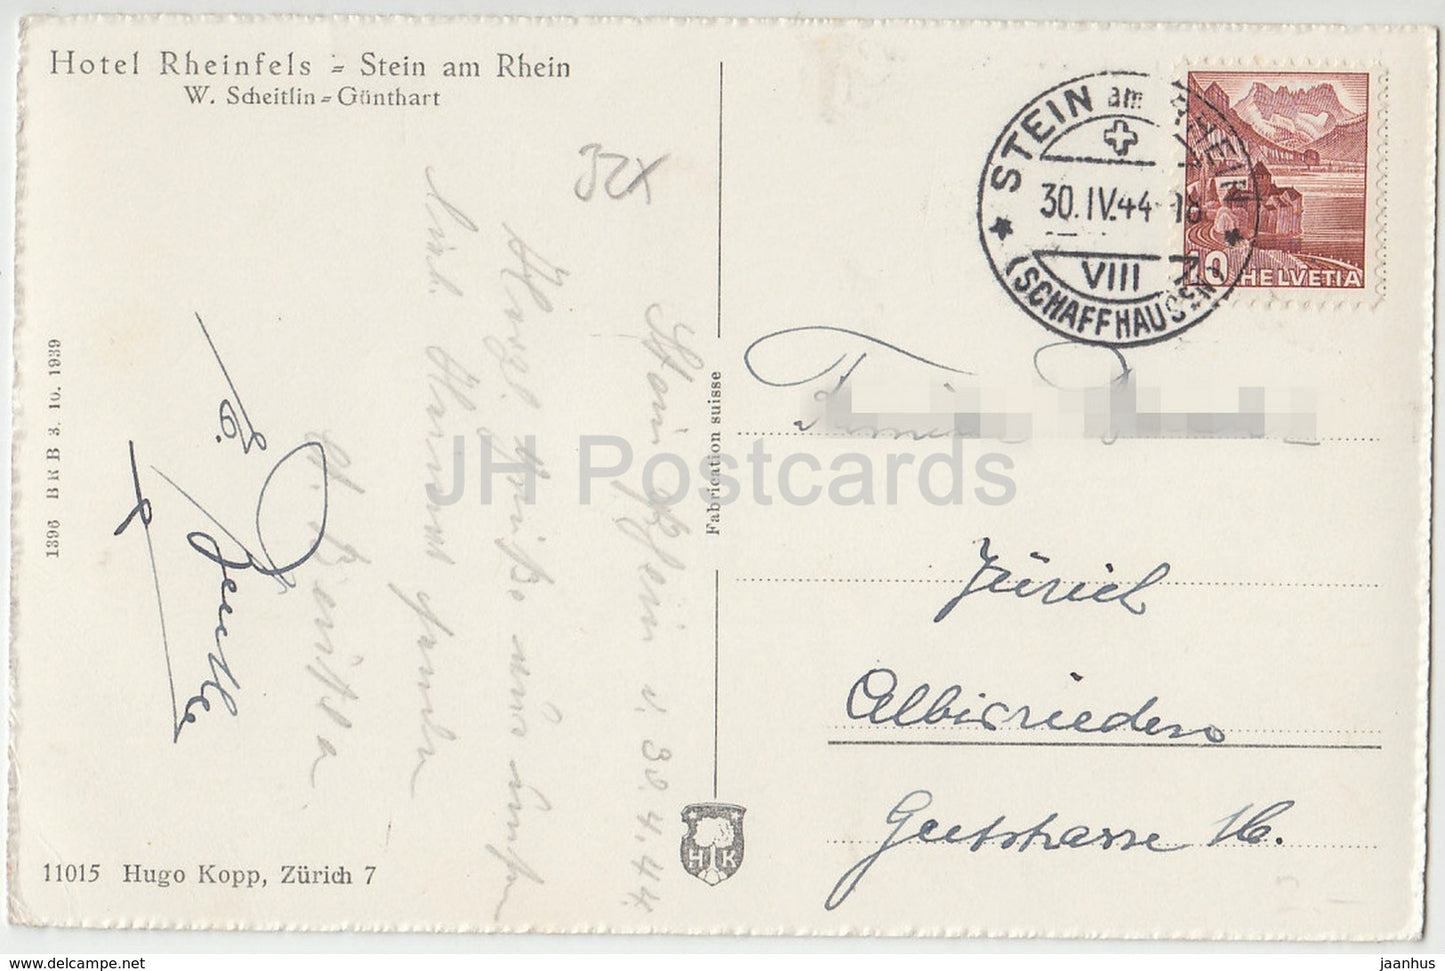 Stein am Rhein - Hotel Rheinfels - Schweiz - 1944 - gebraucht